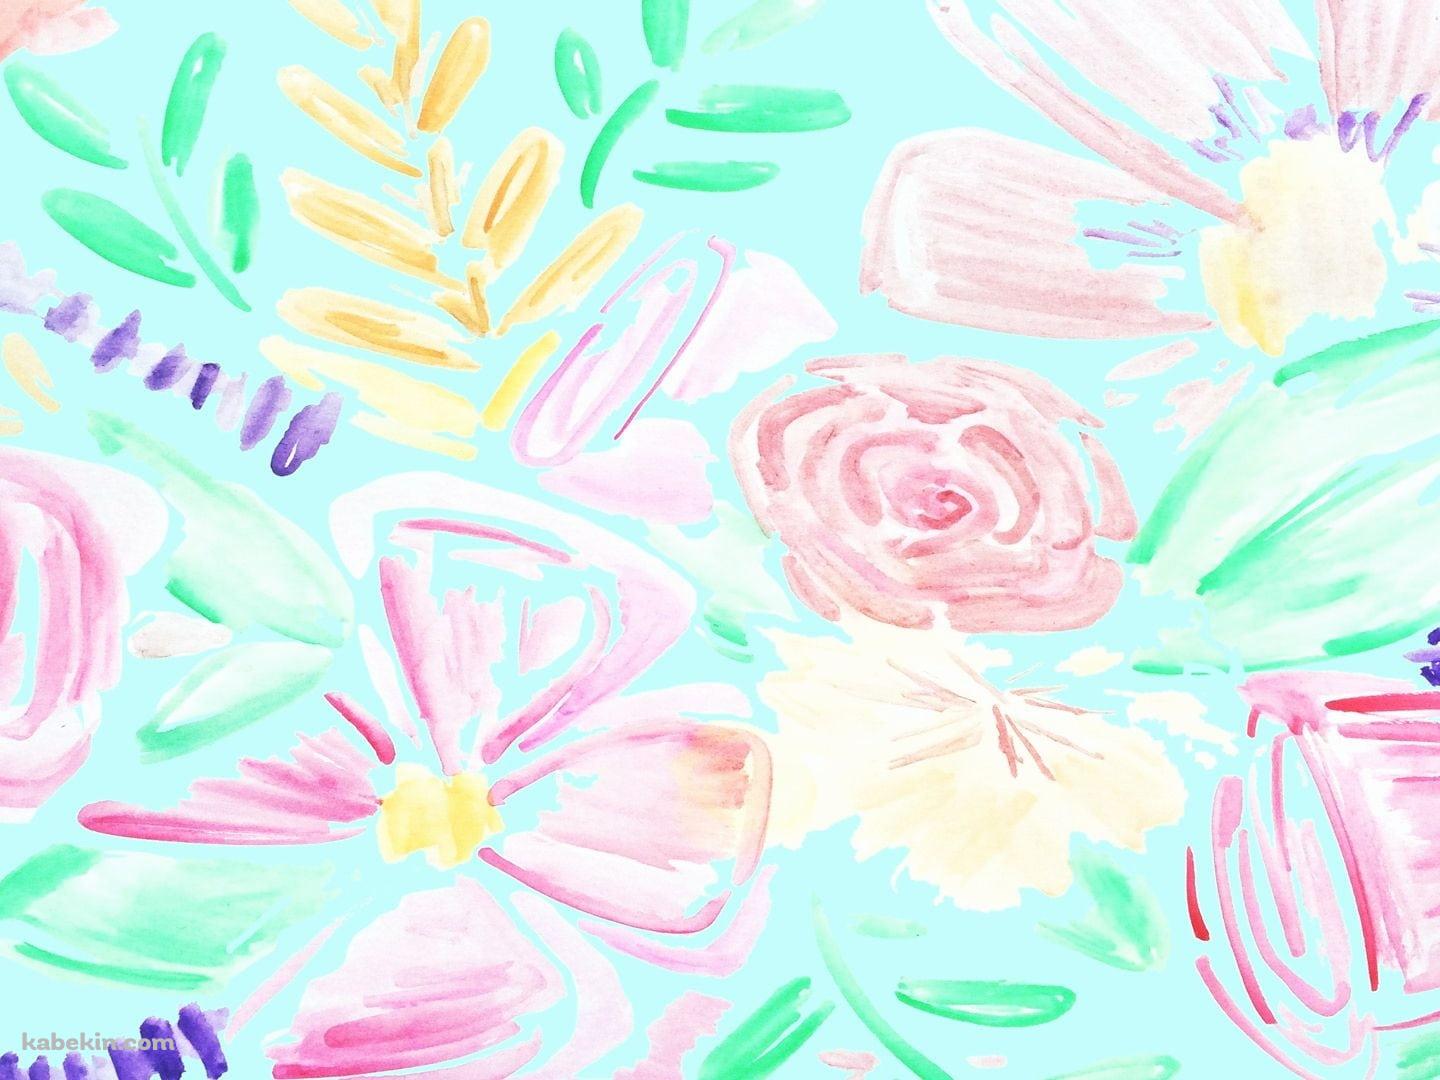 ケイト・スペード ニューヨーク / パステル調 / 花・植物の壁紙(1440px x 1080px) 高画質 PC・デスクトップ用